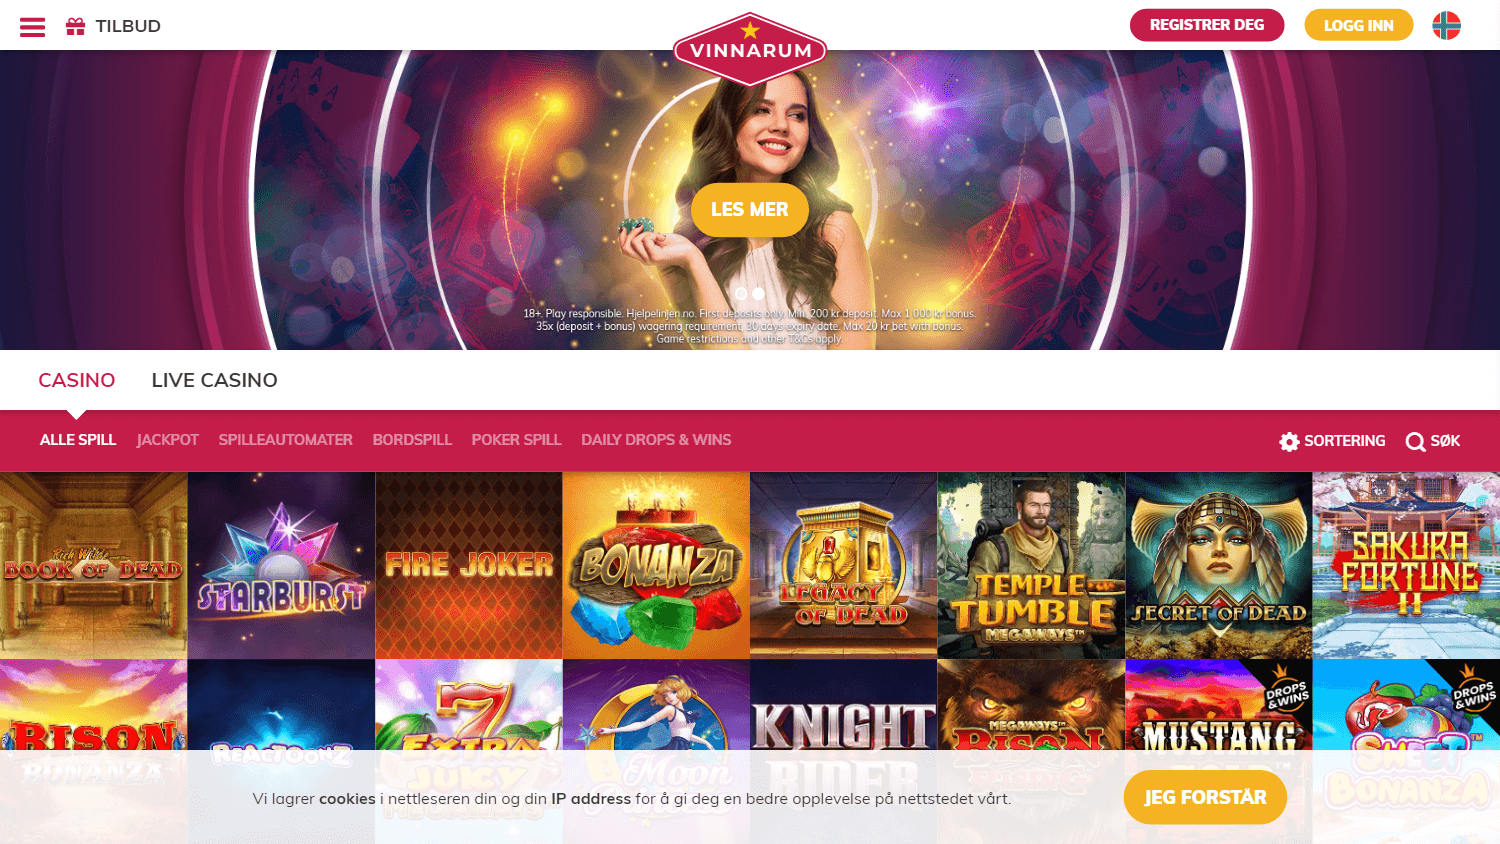 vinnarum_casino_homepage_desktop